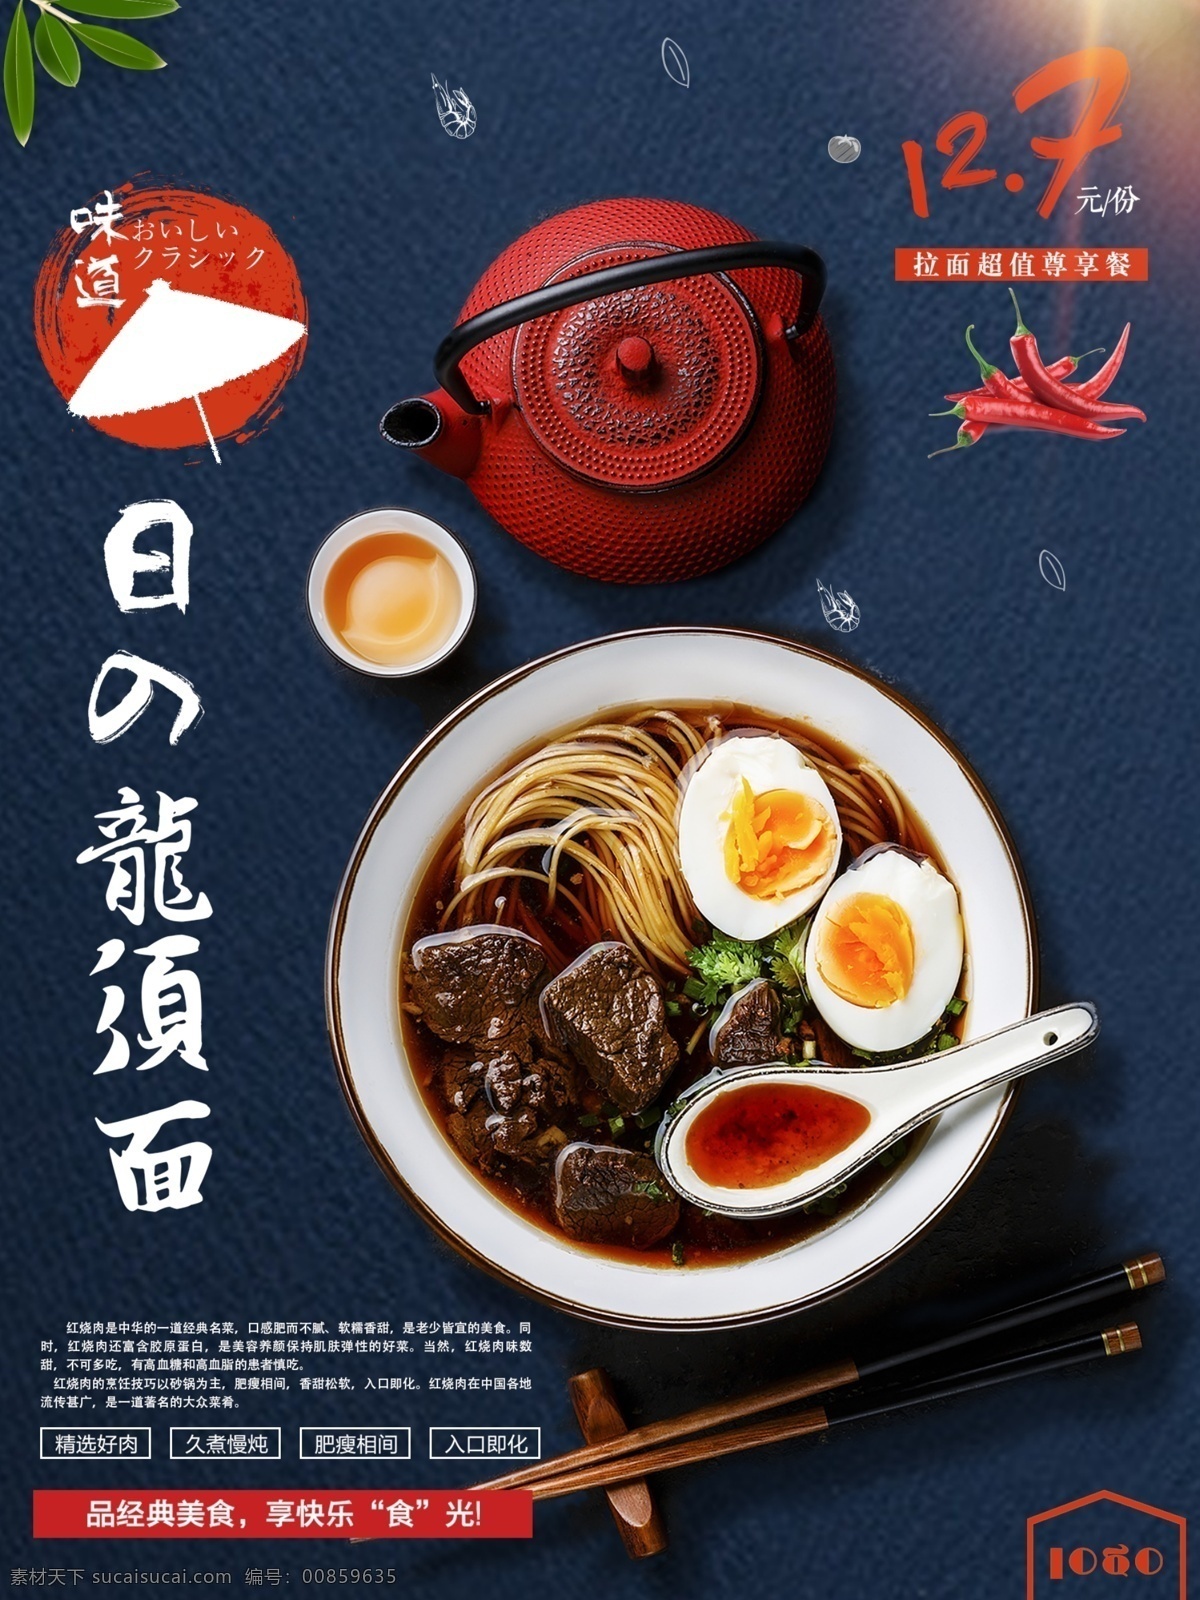 日式 龙须面 美食 宣传海报 美食海报设计 日本料理 餐厅 海报 小吃海报